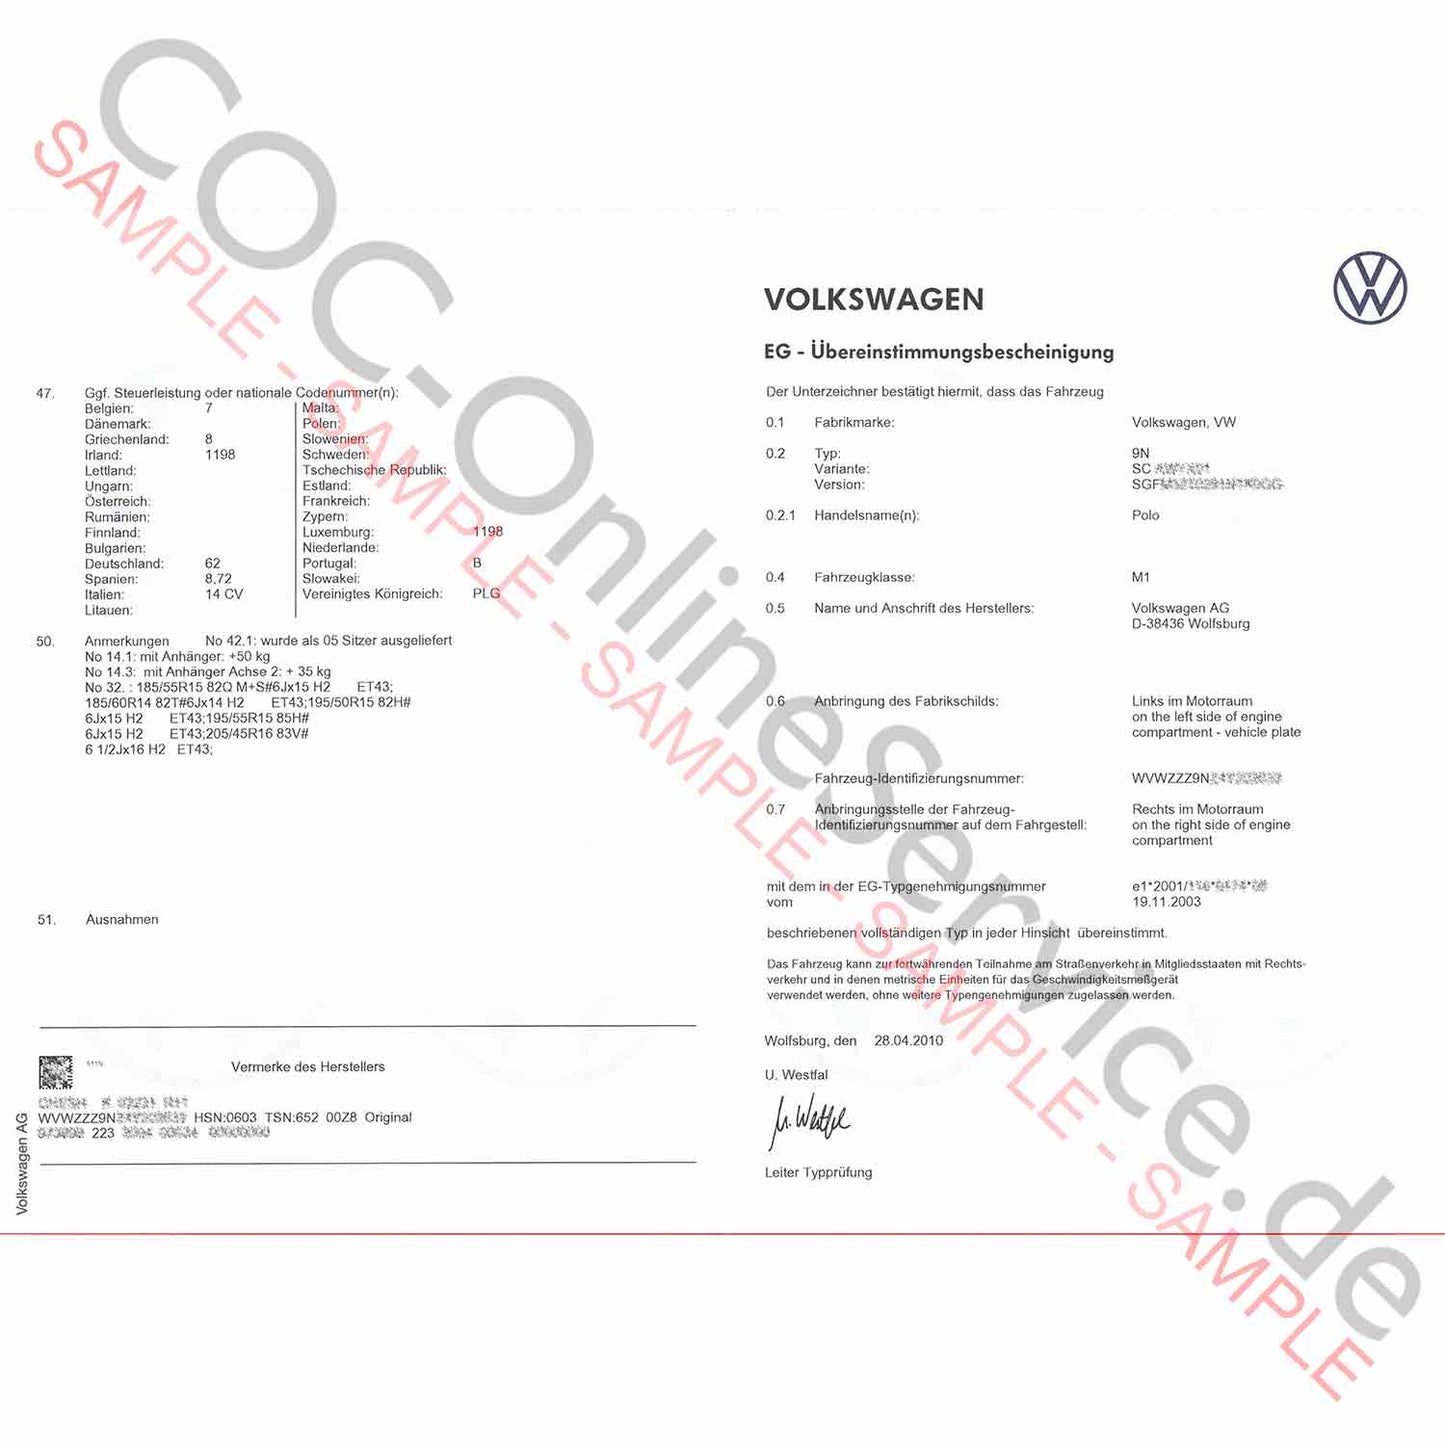 Papéis COC para VW Volkswagen (Certificado de Conformidade)